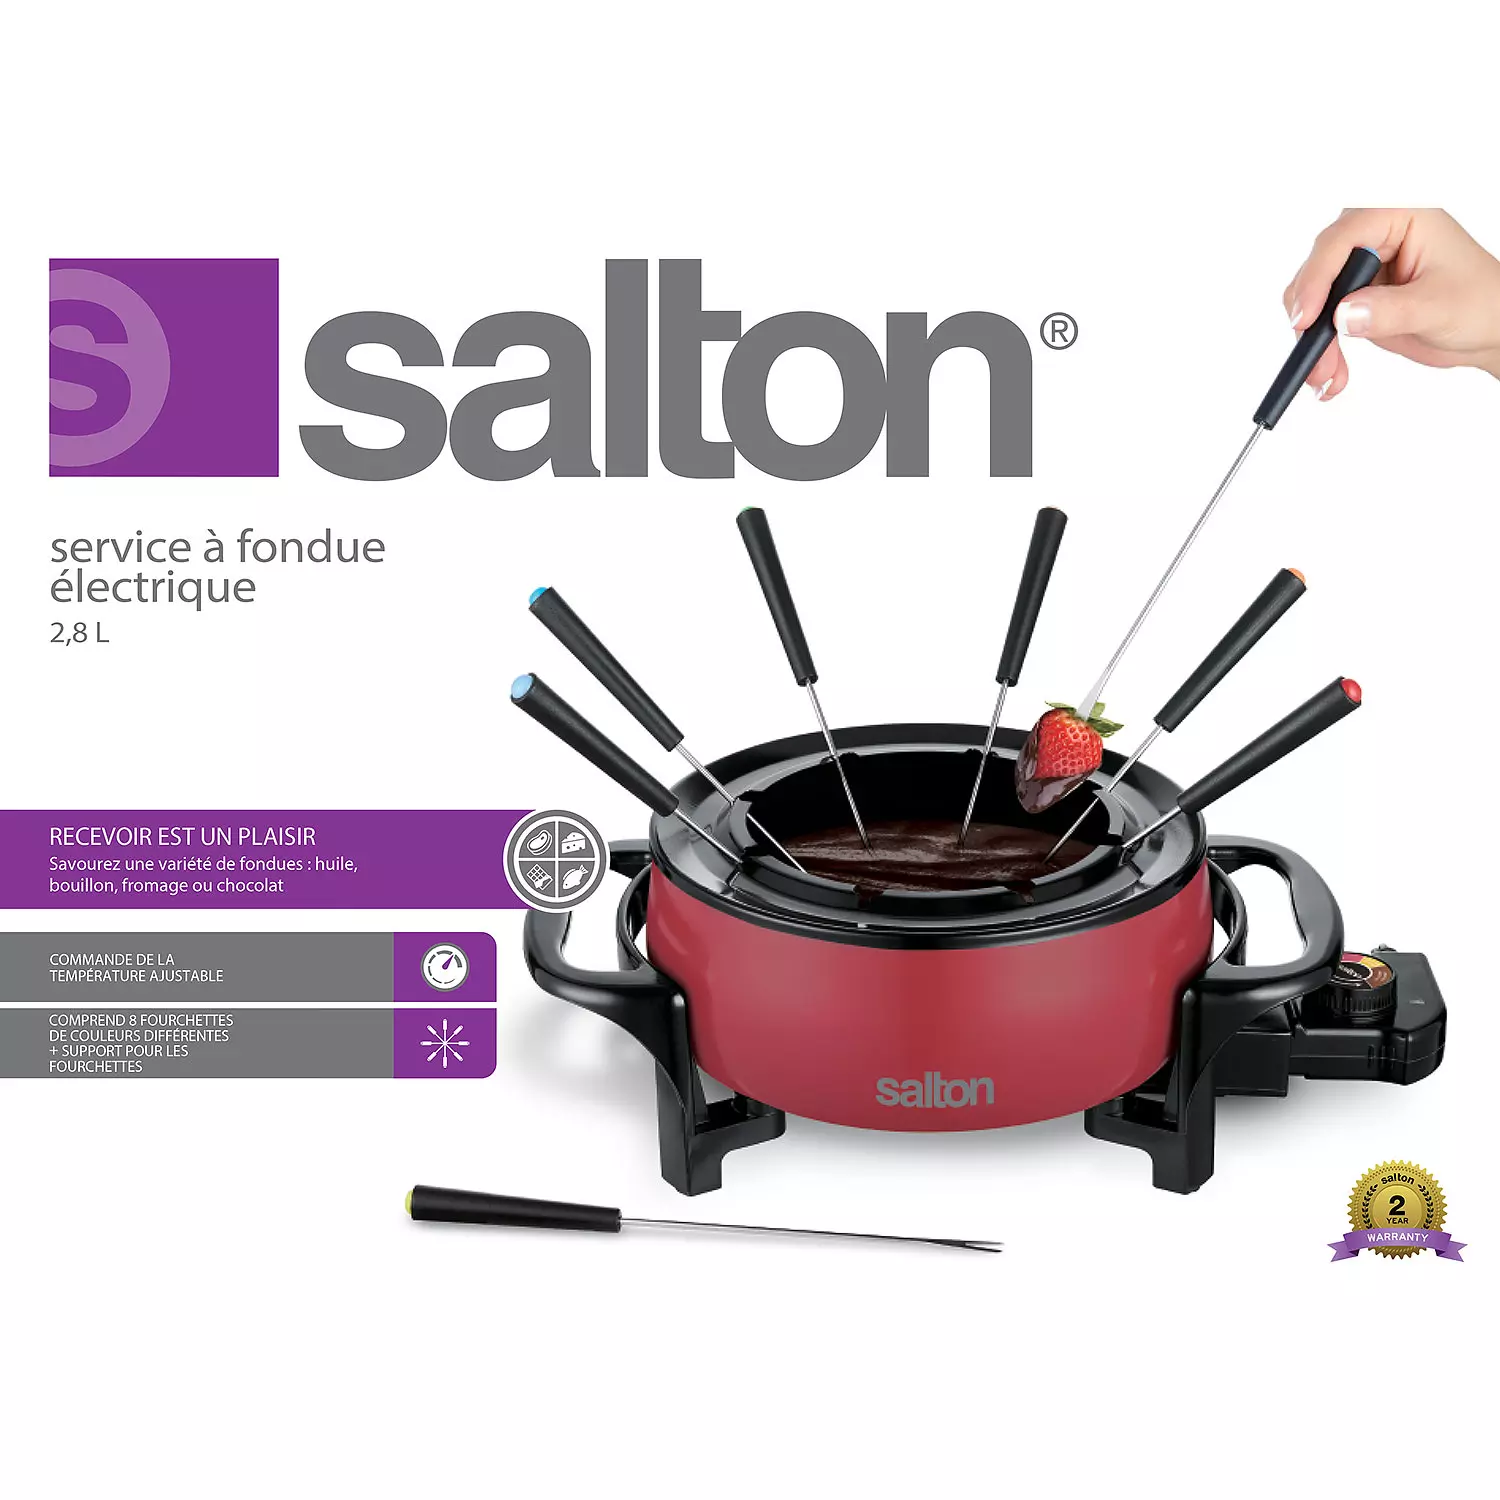 Salton - Service à fondue électrique, 2,8L, rouge. Colour: red, Fr